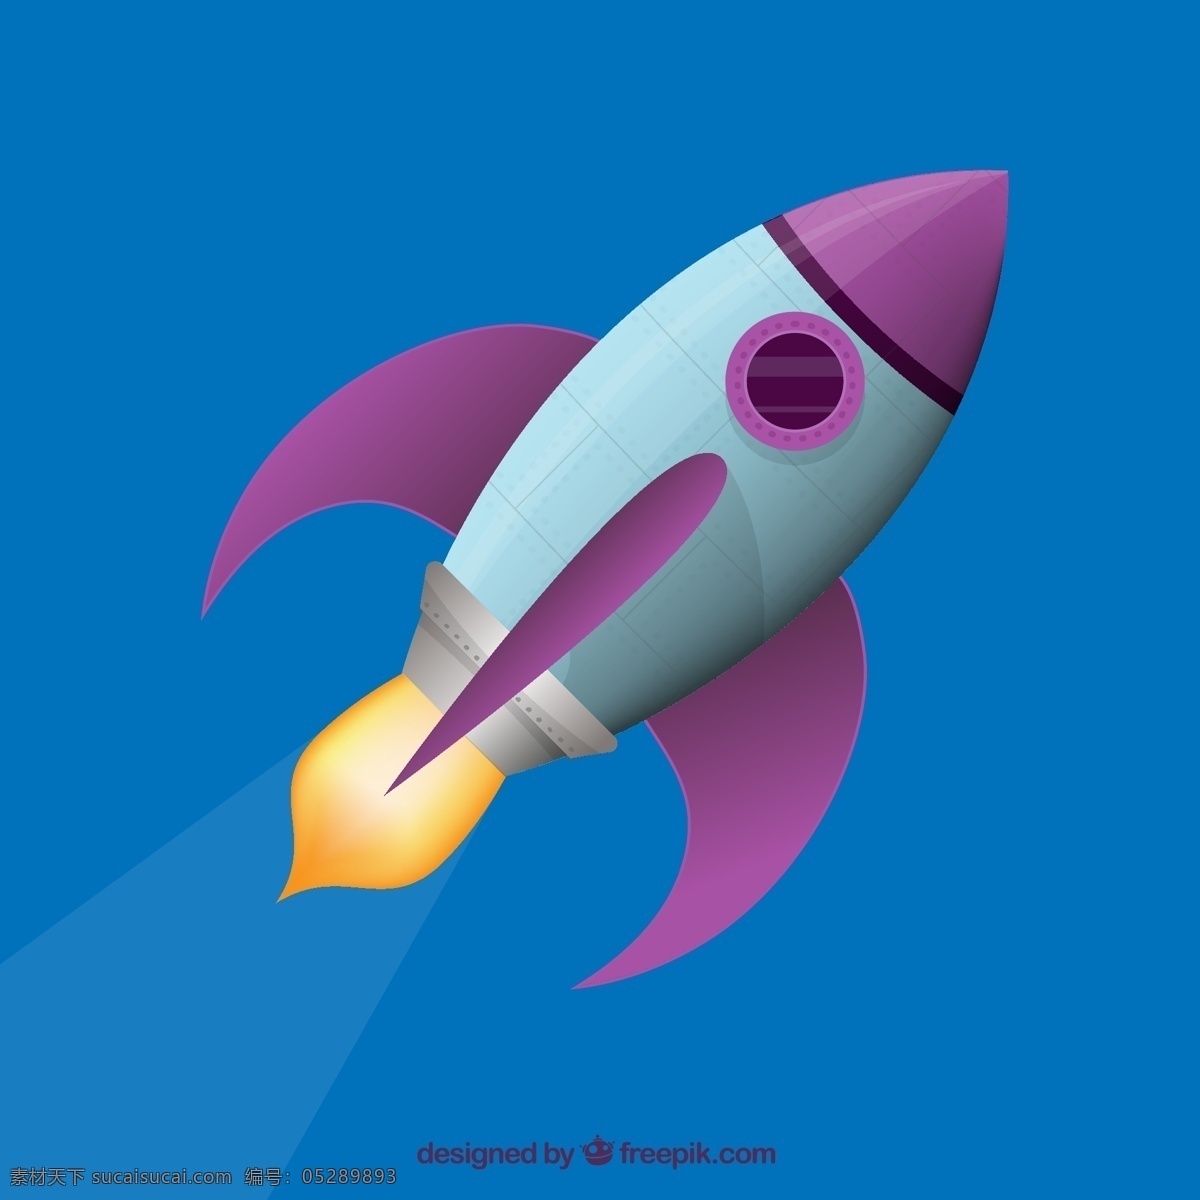 飞行的火箭 商业 卡通 太空 飞船 火箭 银河 飞行 宇航员 宇宙 启动 发射 太空船 起飞 蓝色